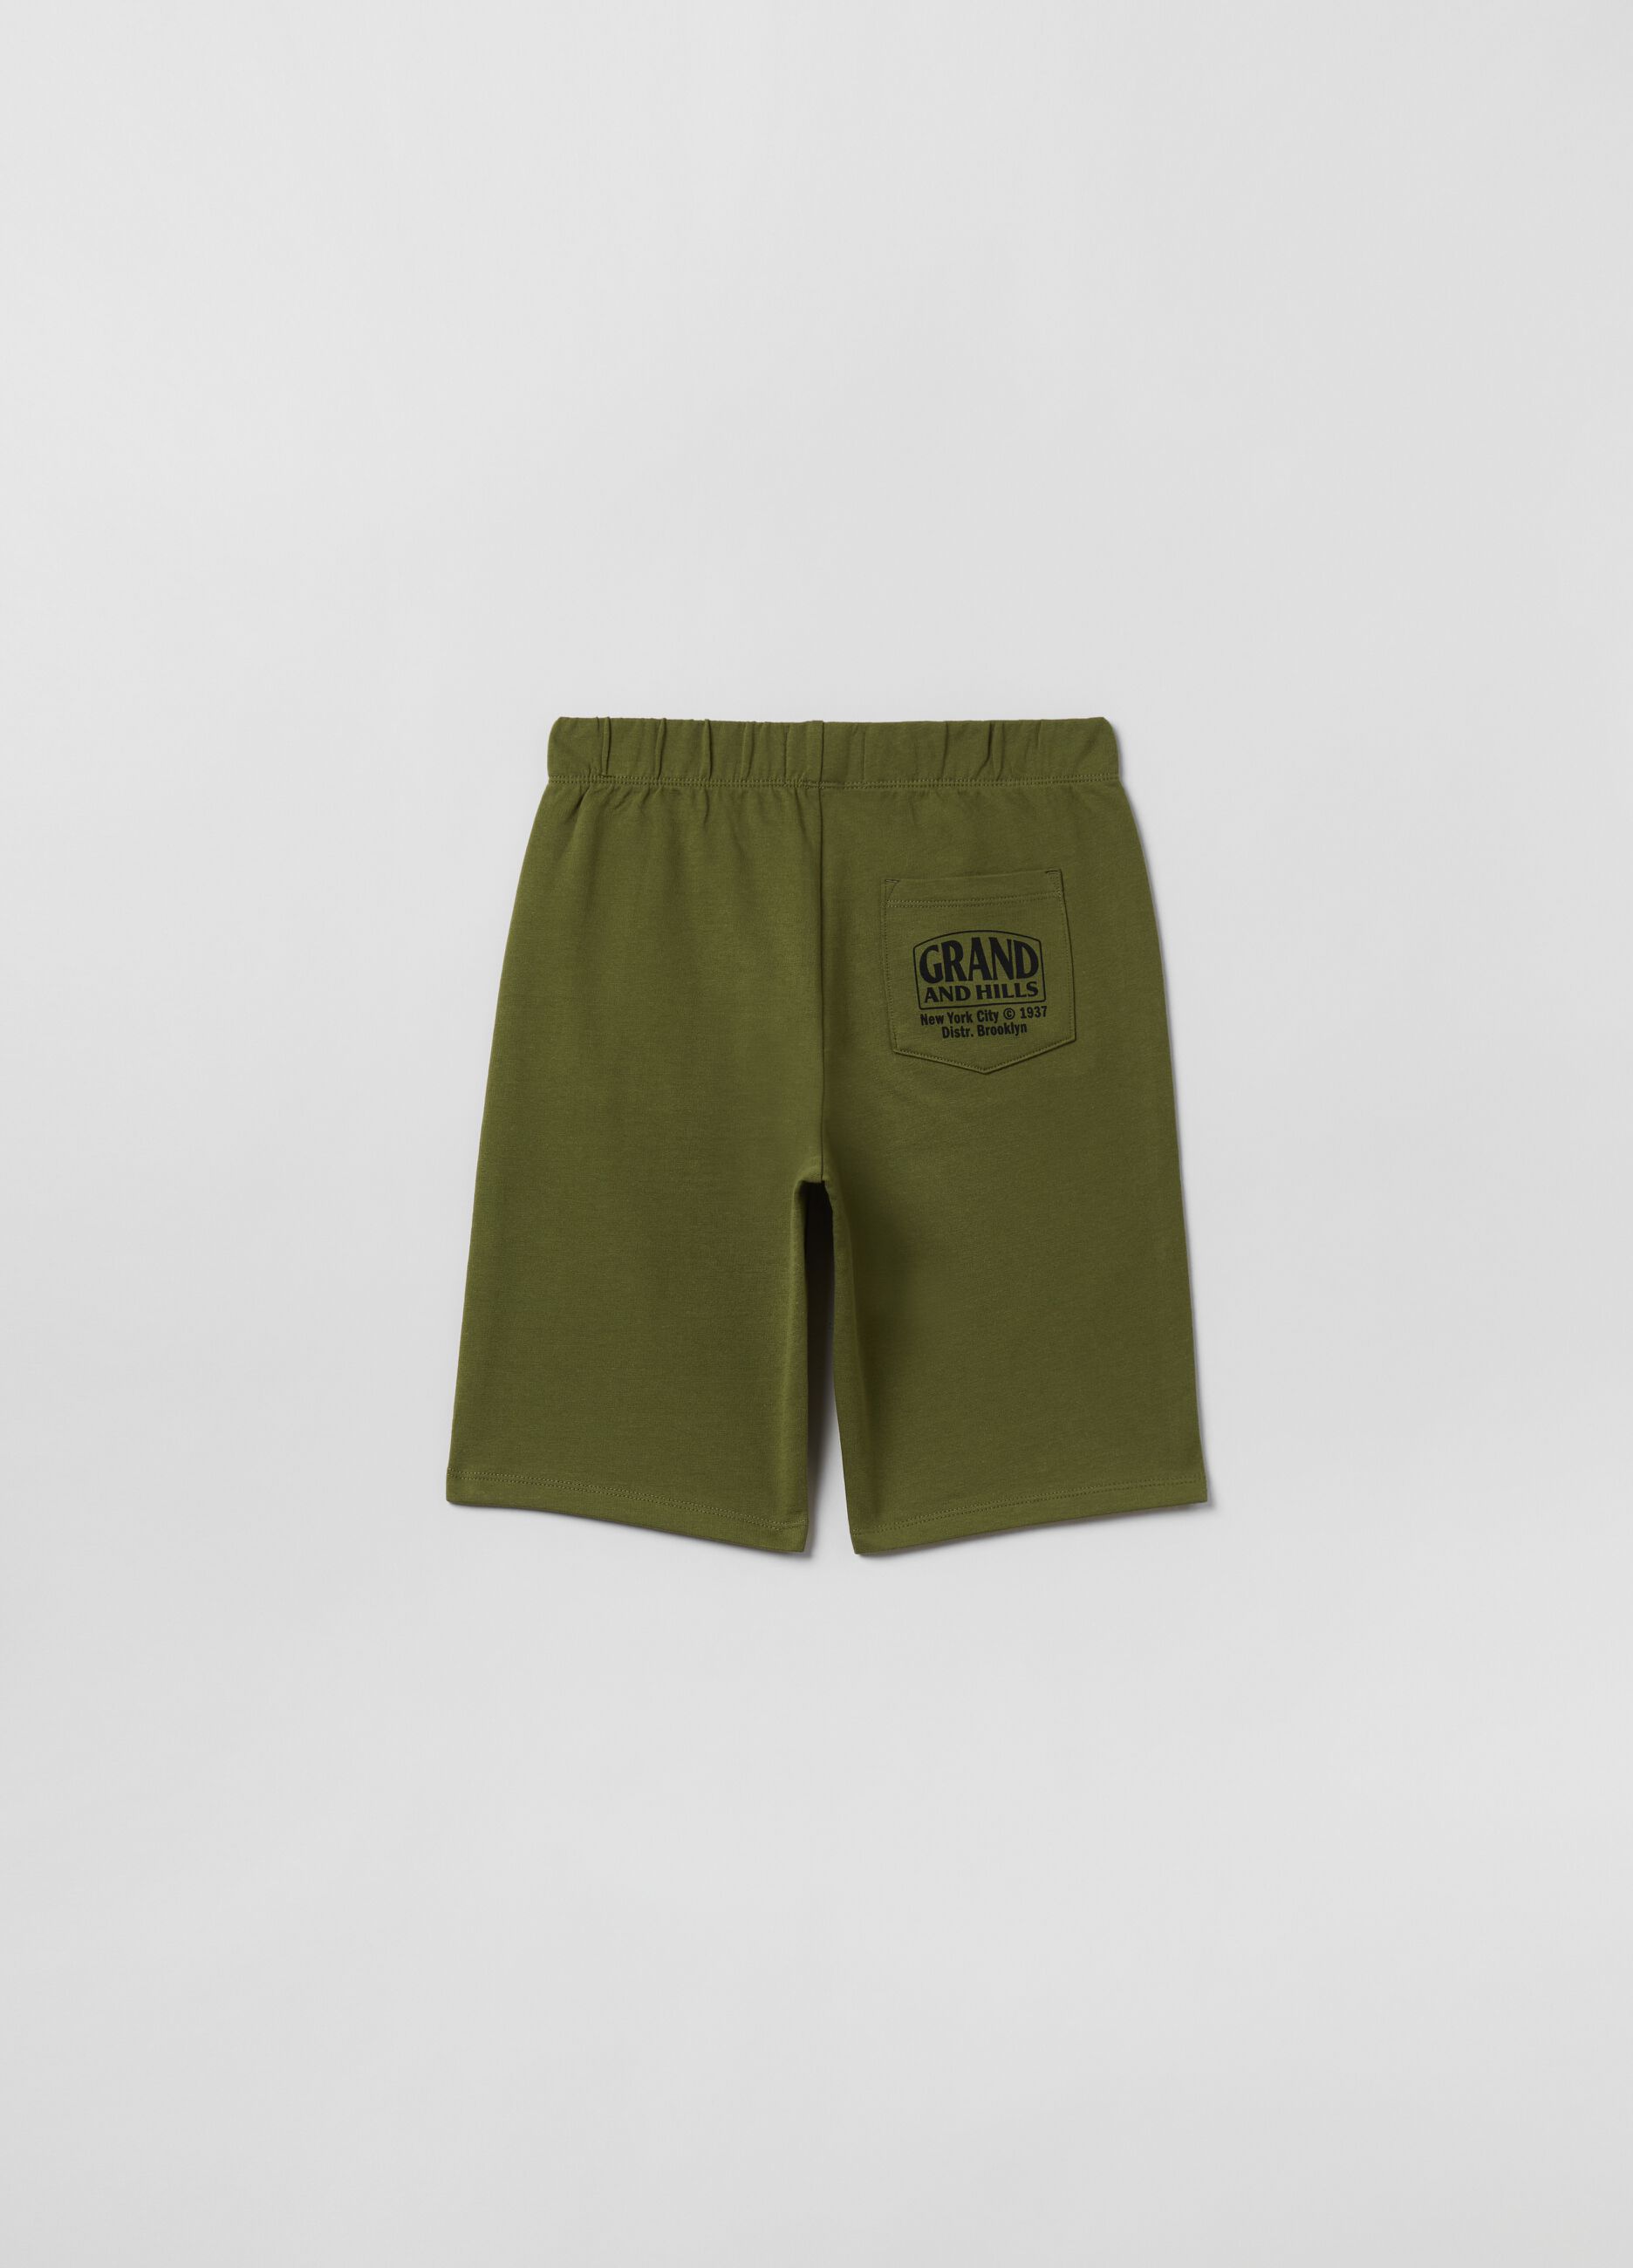 Shorts in felpa con stampa Grand&Hills_1